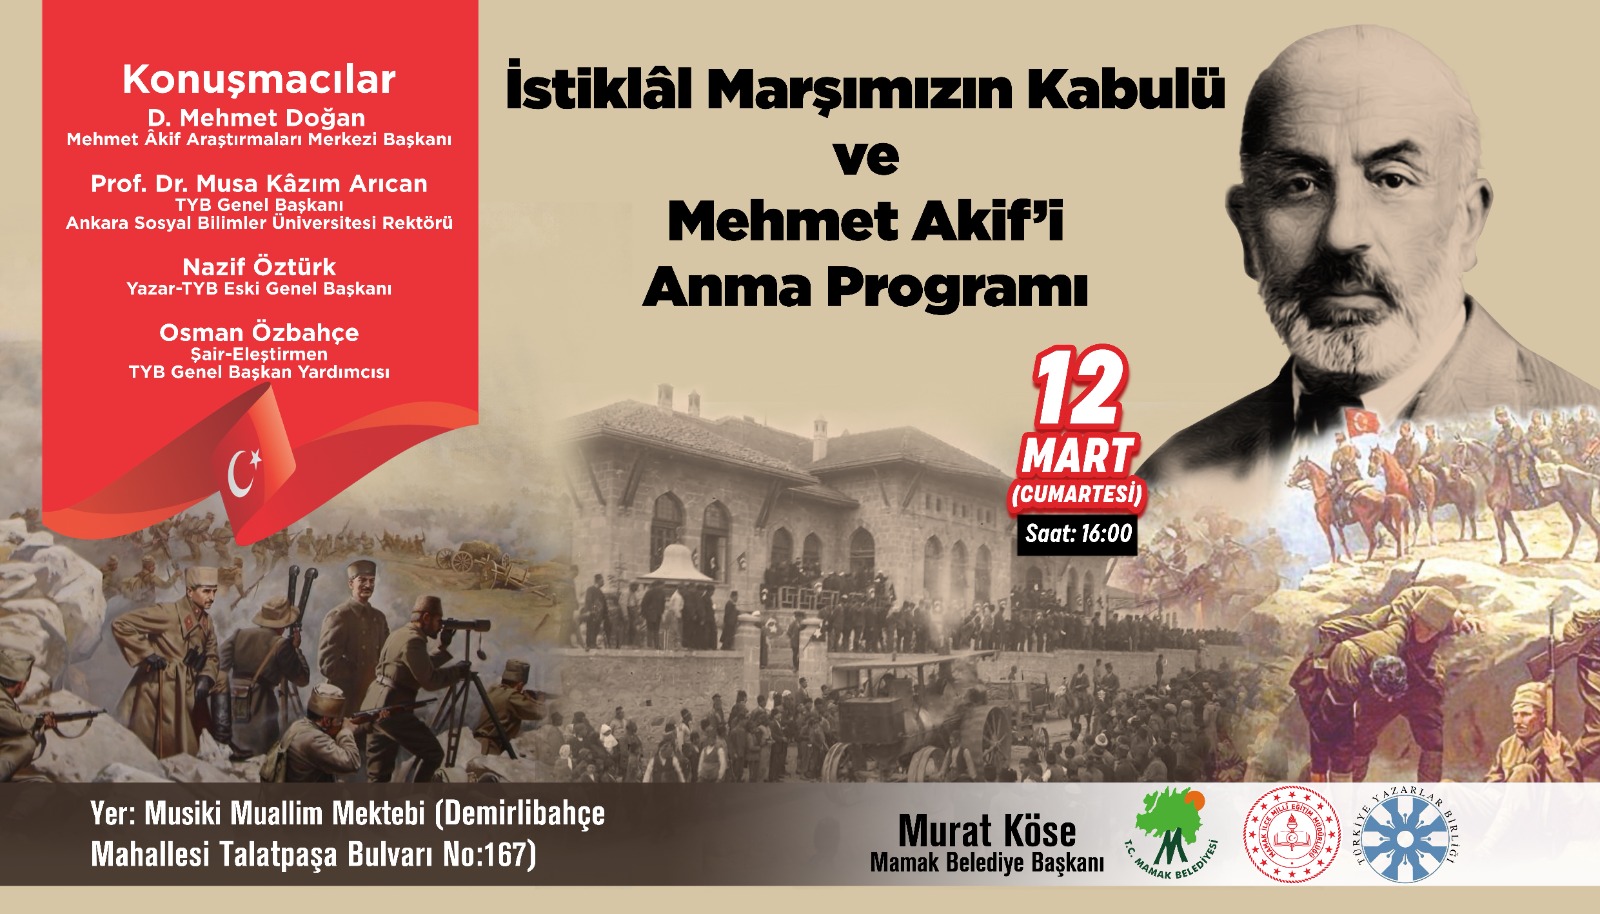 İstiklâl Marşı'nın Kabulü ve Mehmet Âkif’i Anma Programı